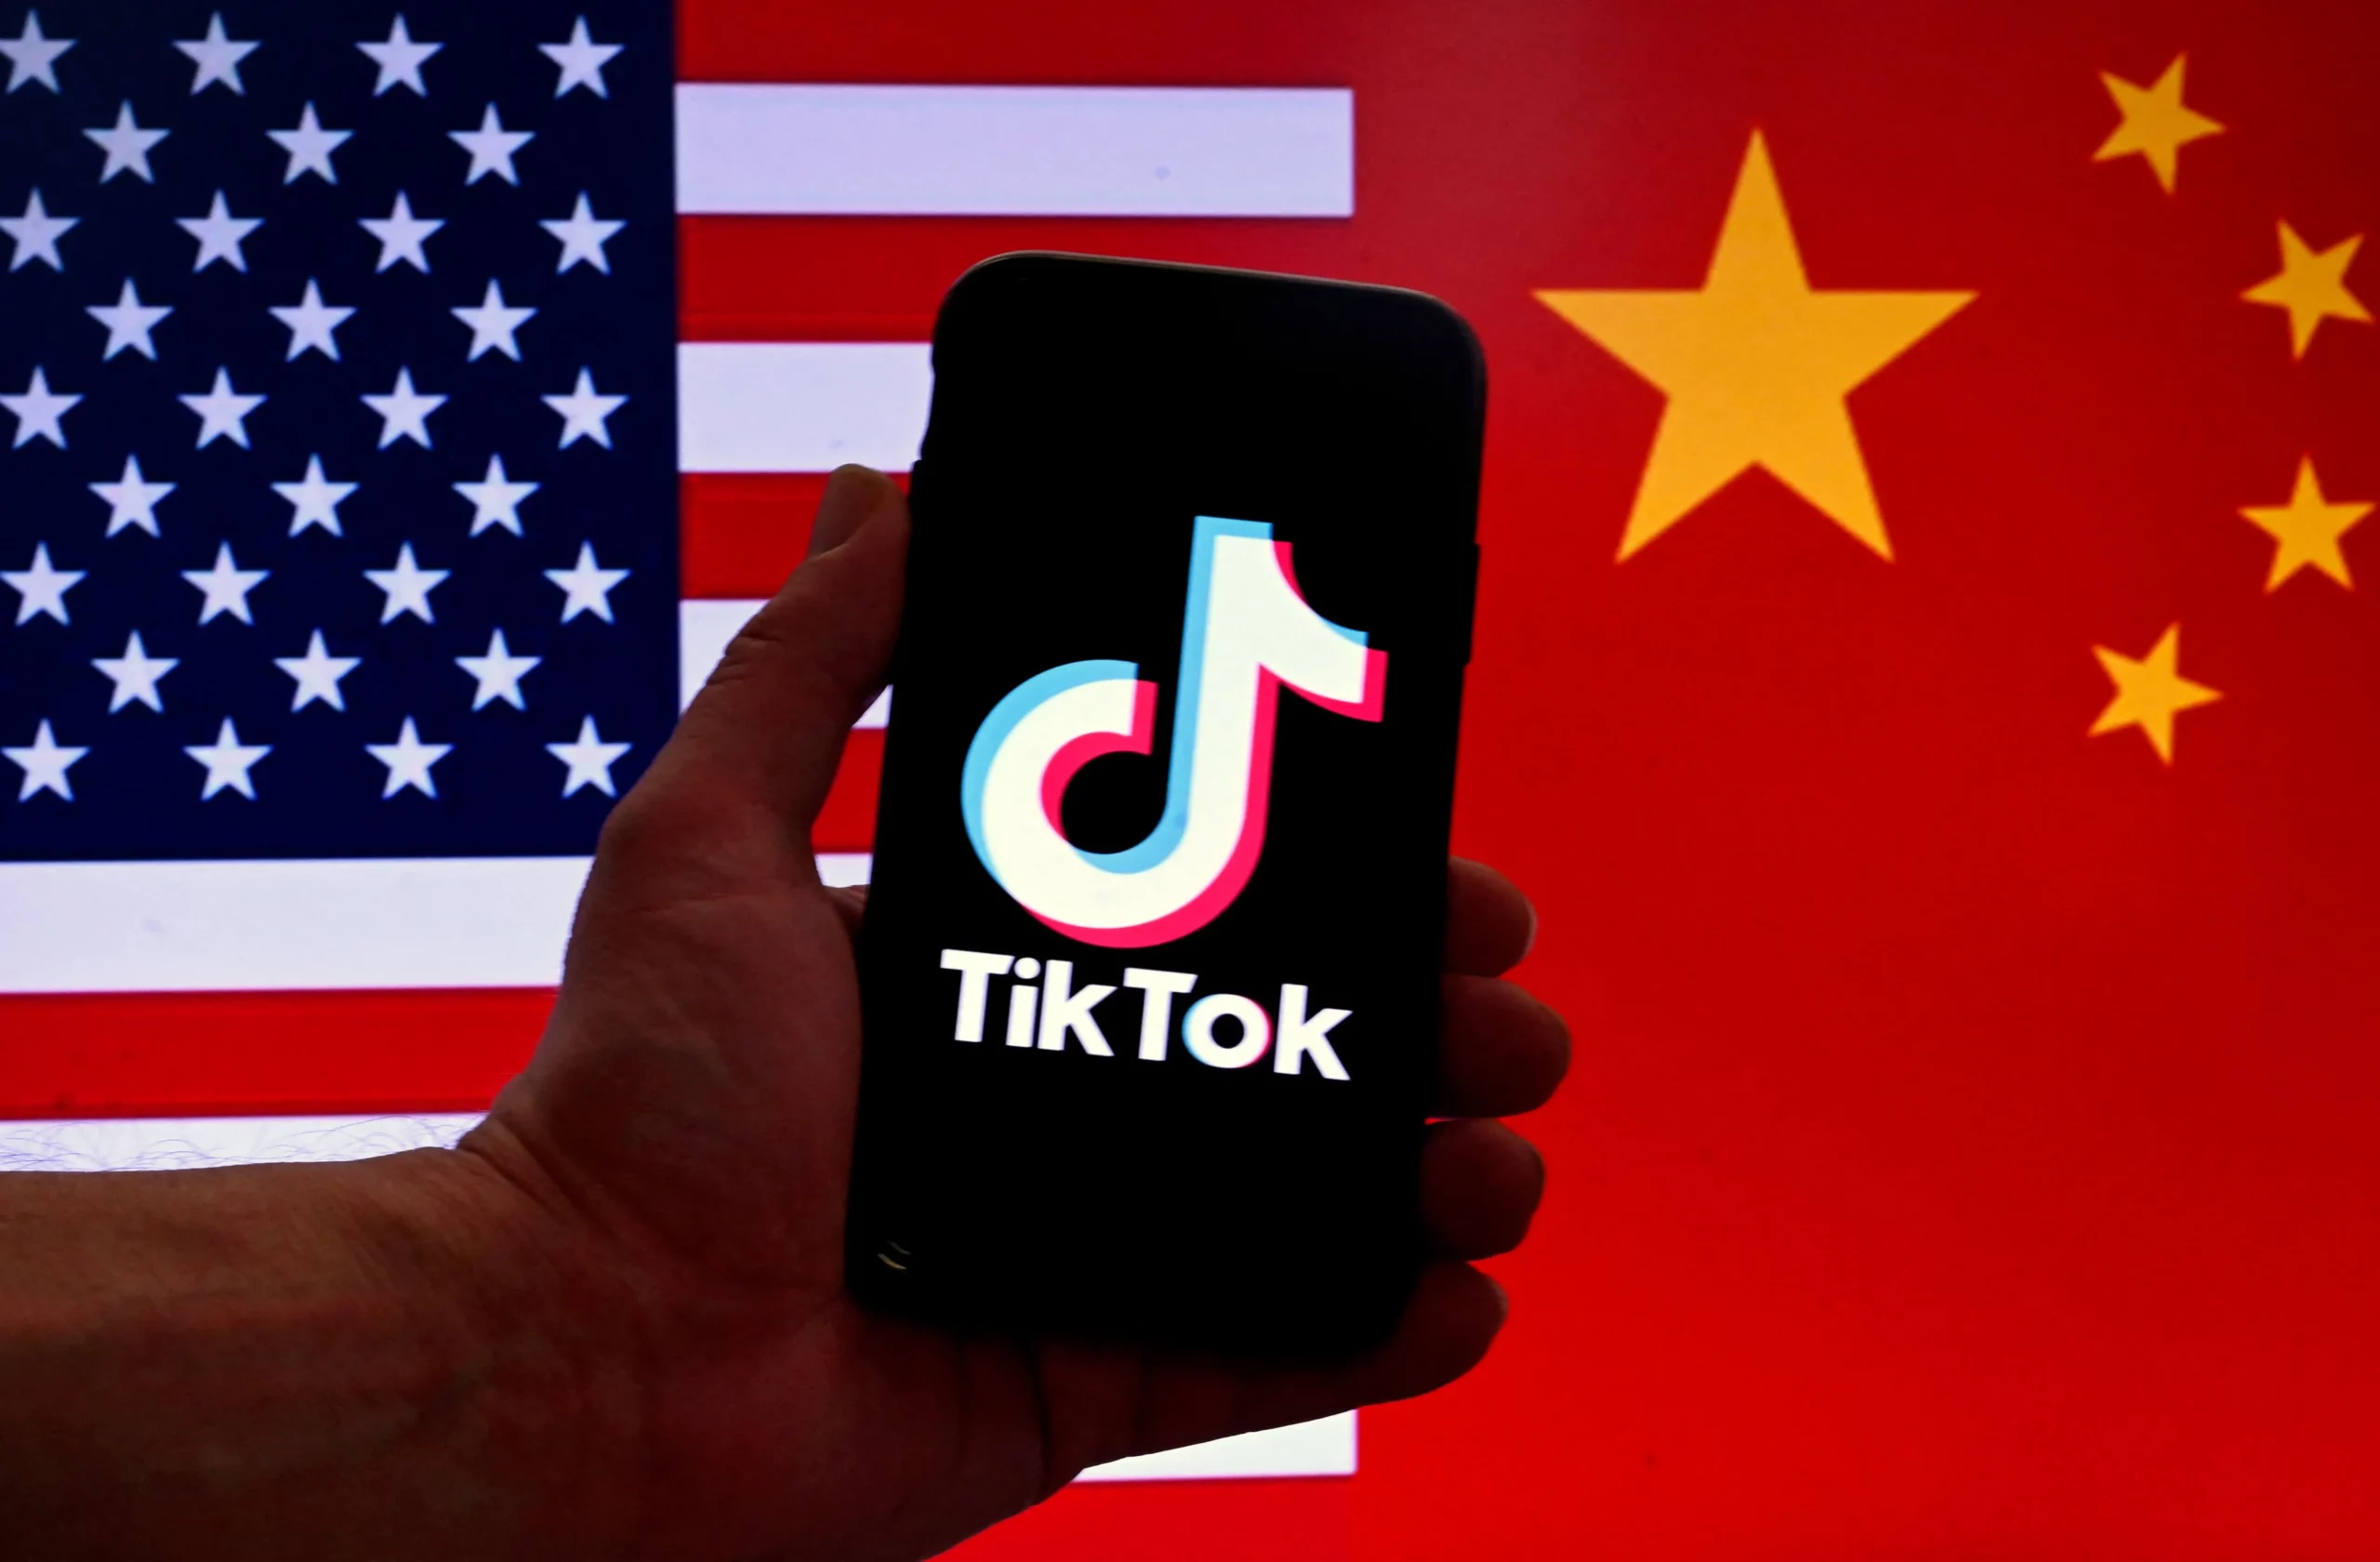 TikTok Users Unite in Massive Call-In Campaign Against Potential U.S. Ban